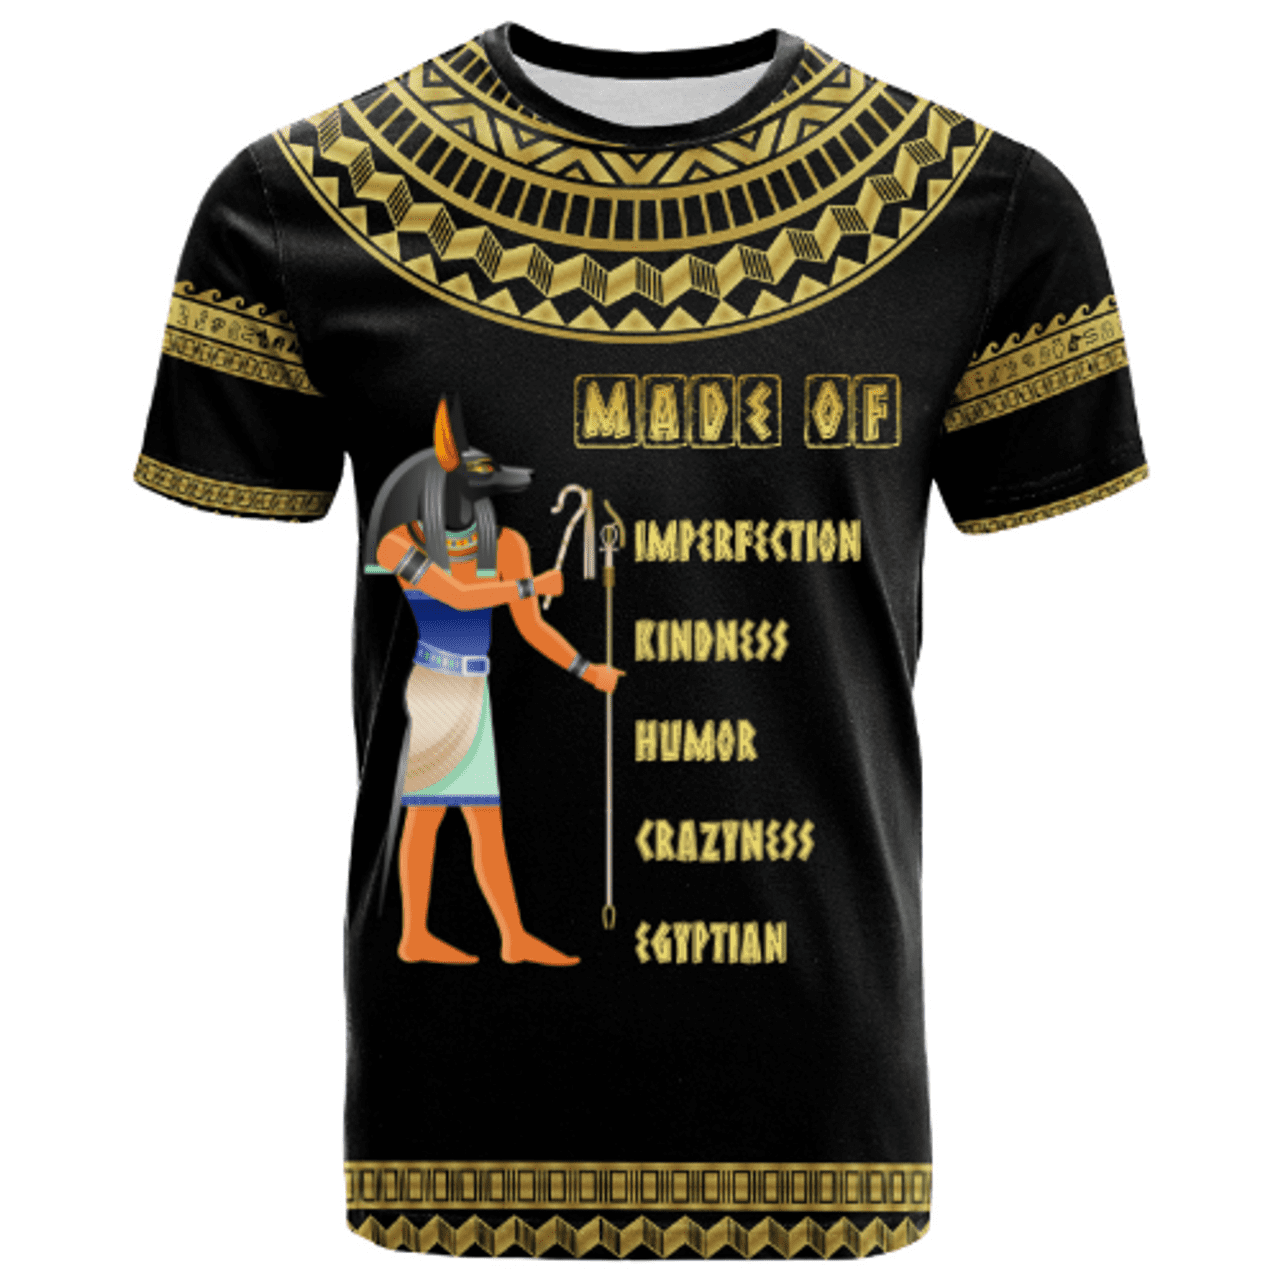 Egypt T-shirt – Custom Made of 100% Egypt T-shirt